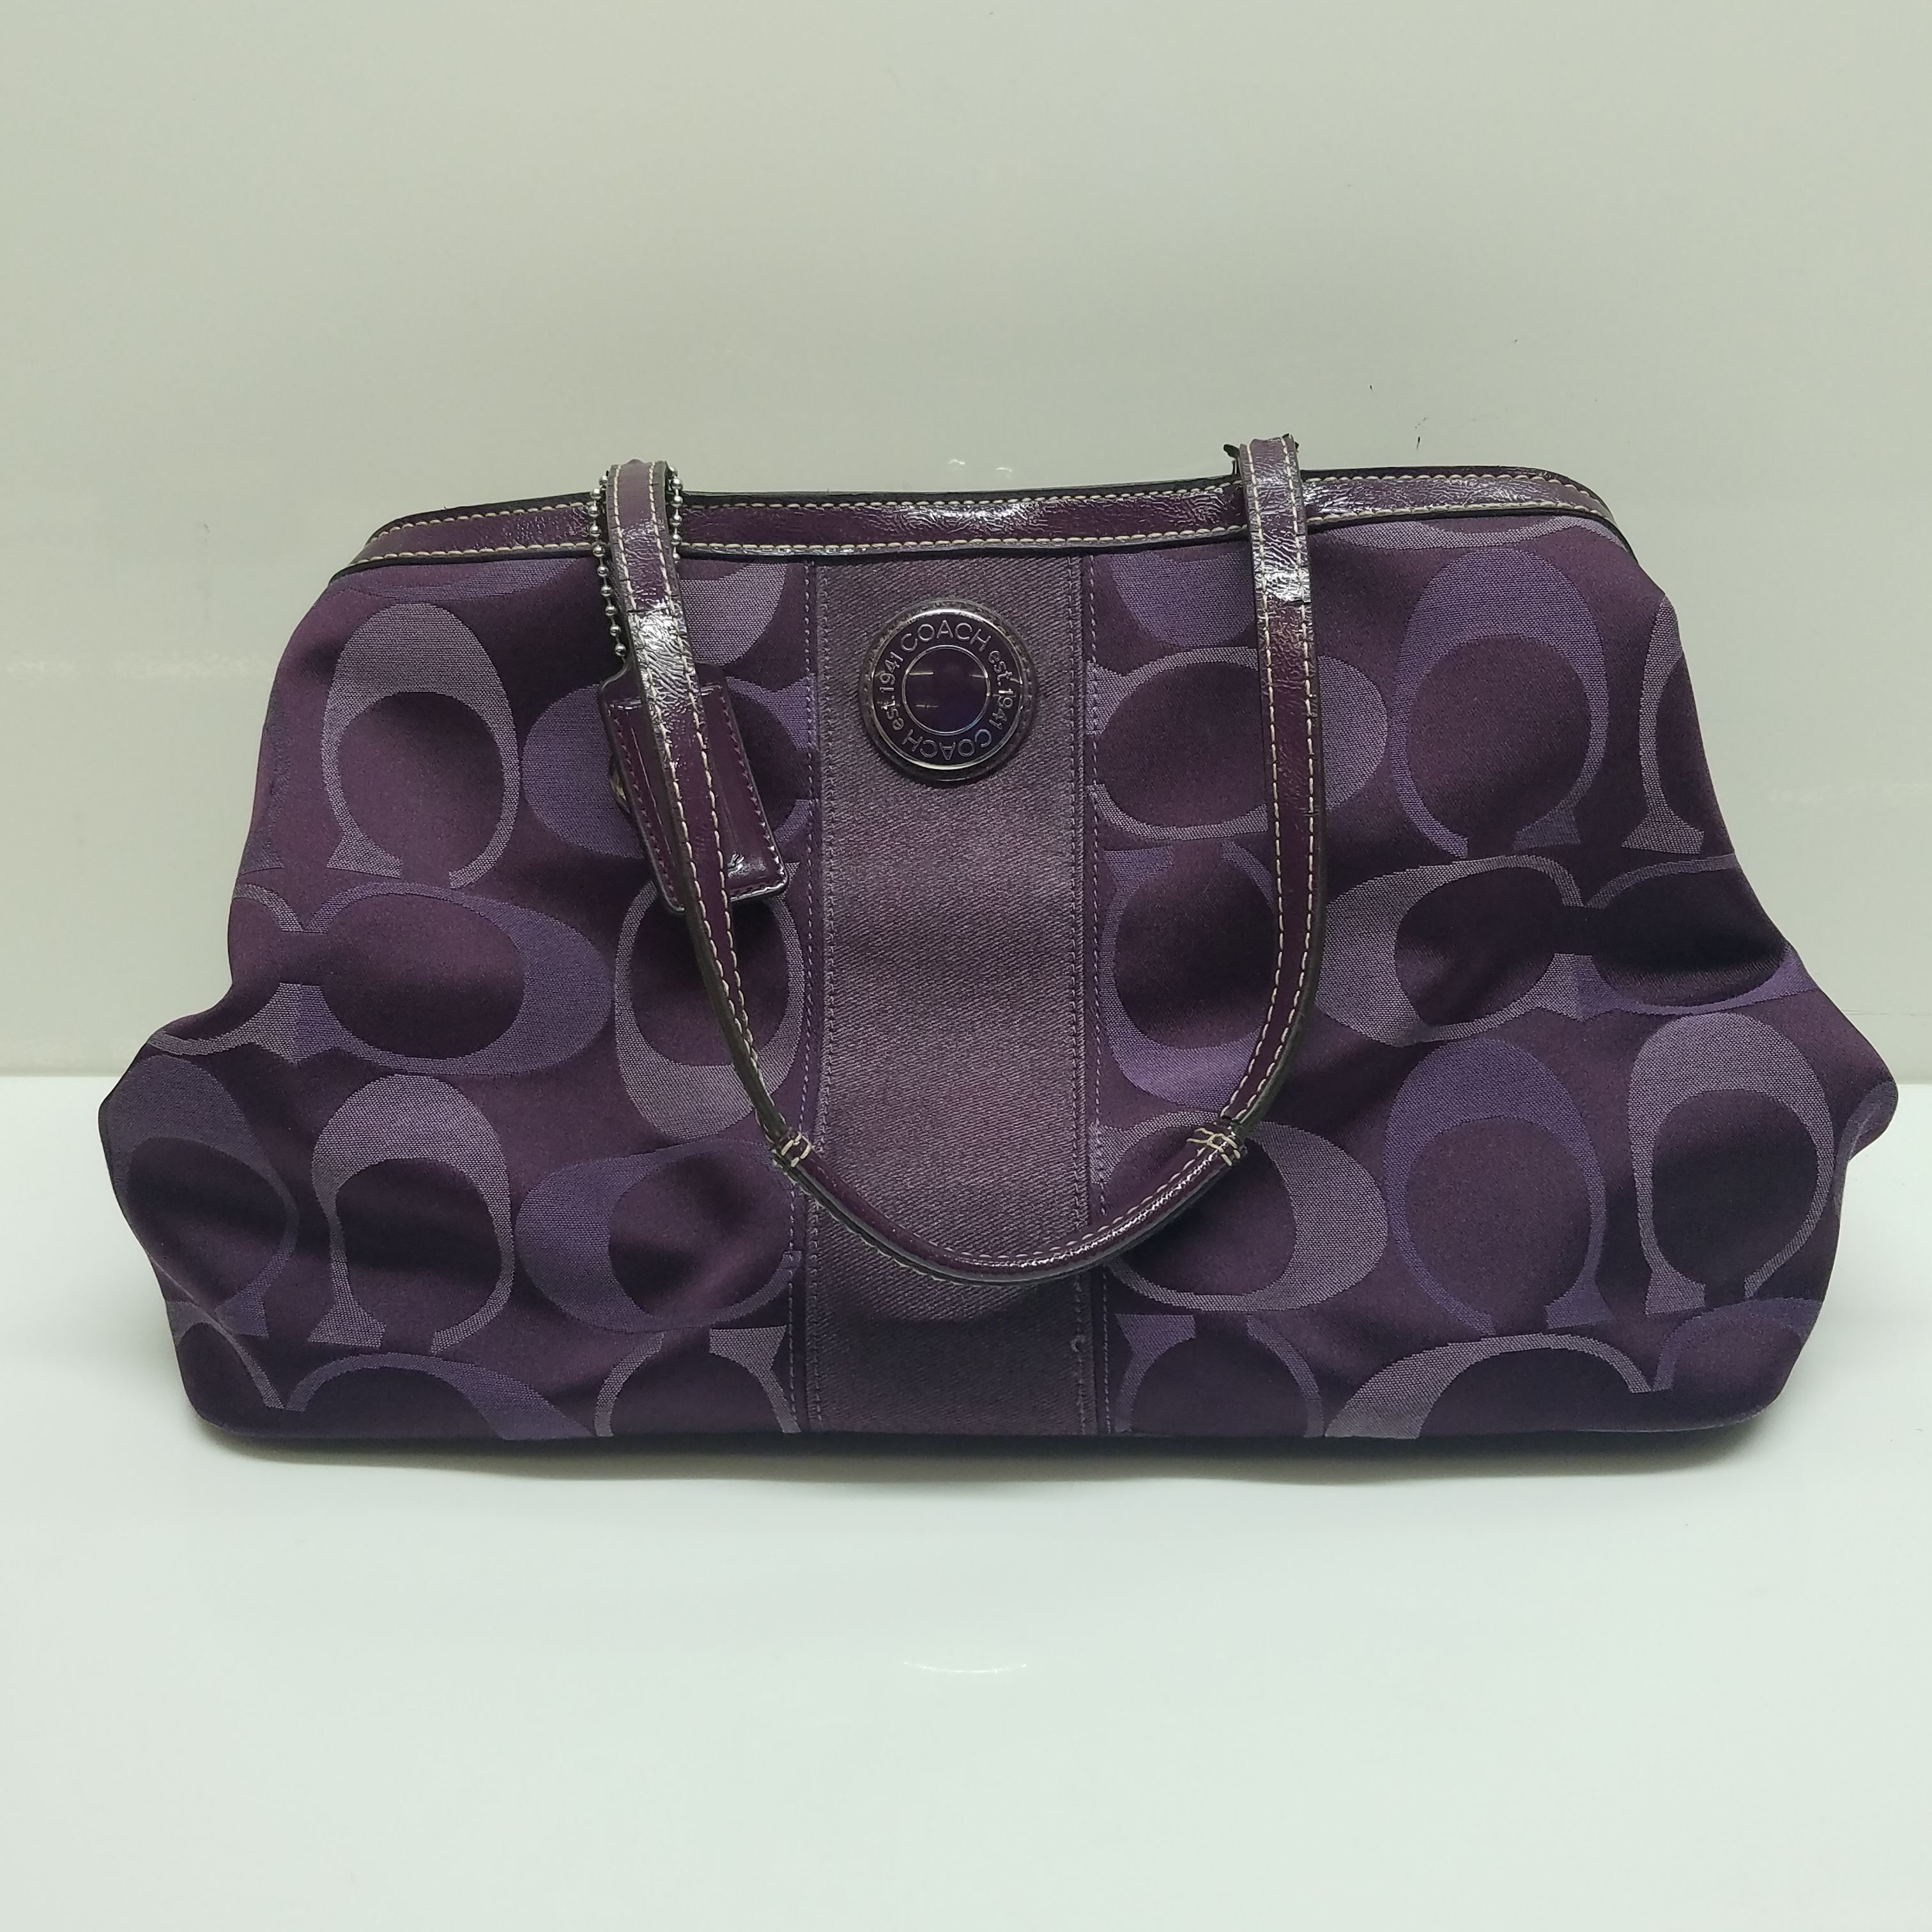 COACH Handbags for sale in C.A.N.D.O., Mesa | Facebook Marketplace |  Facebook